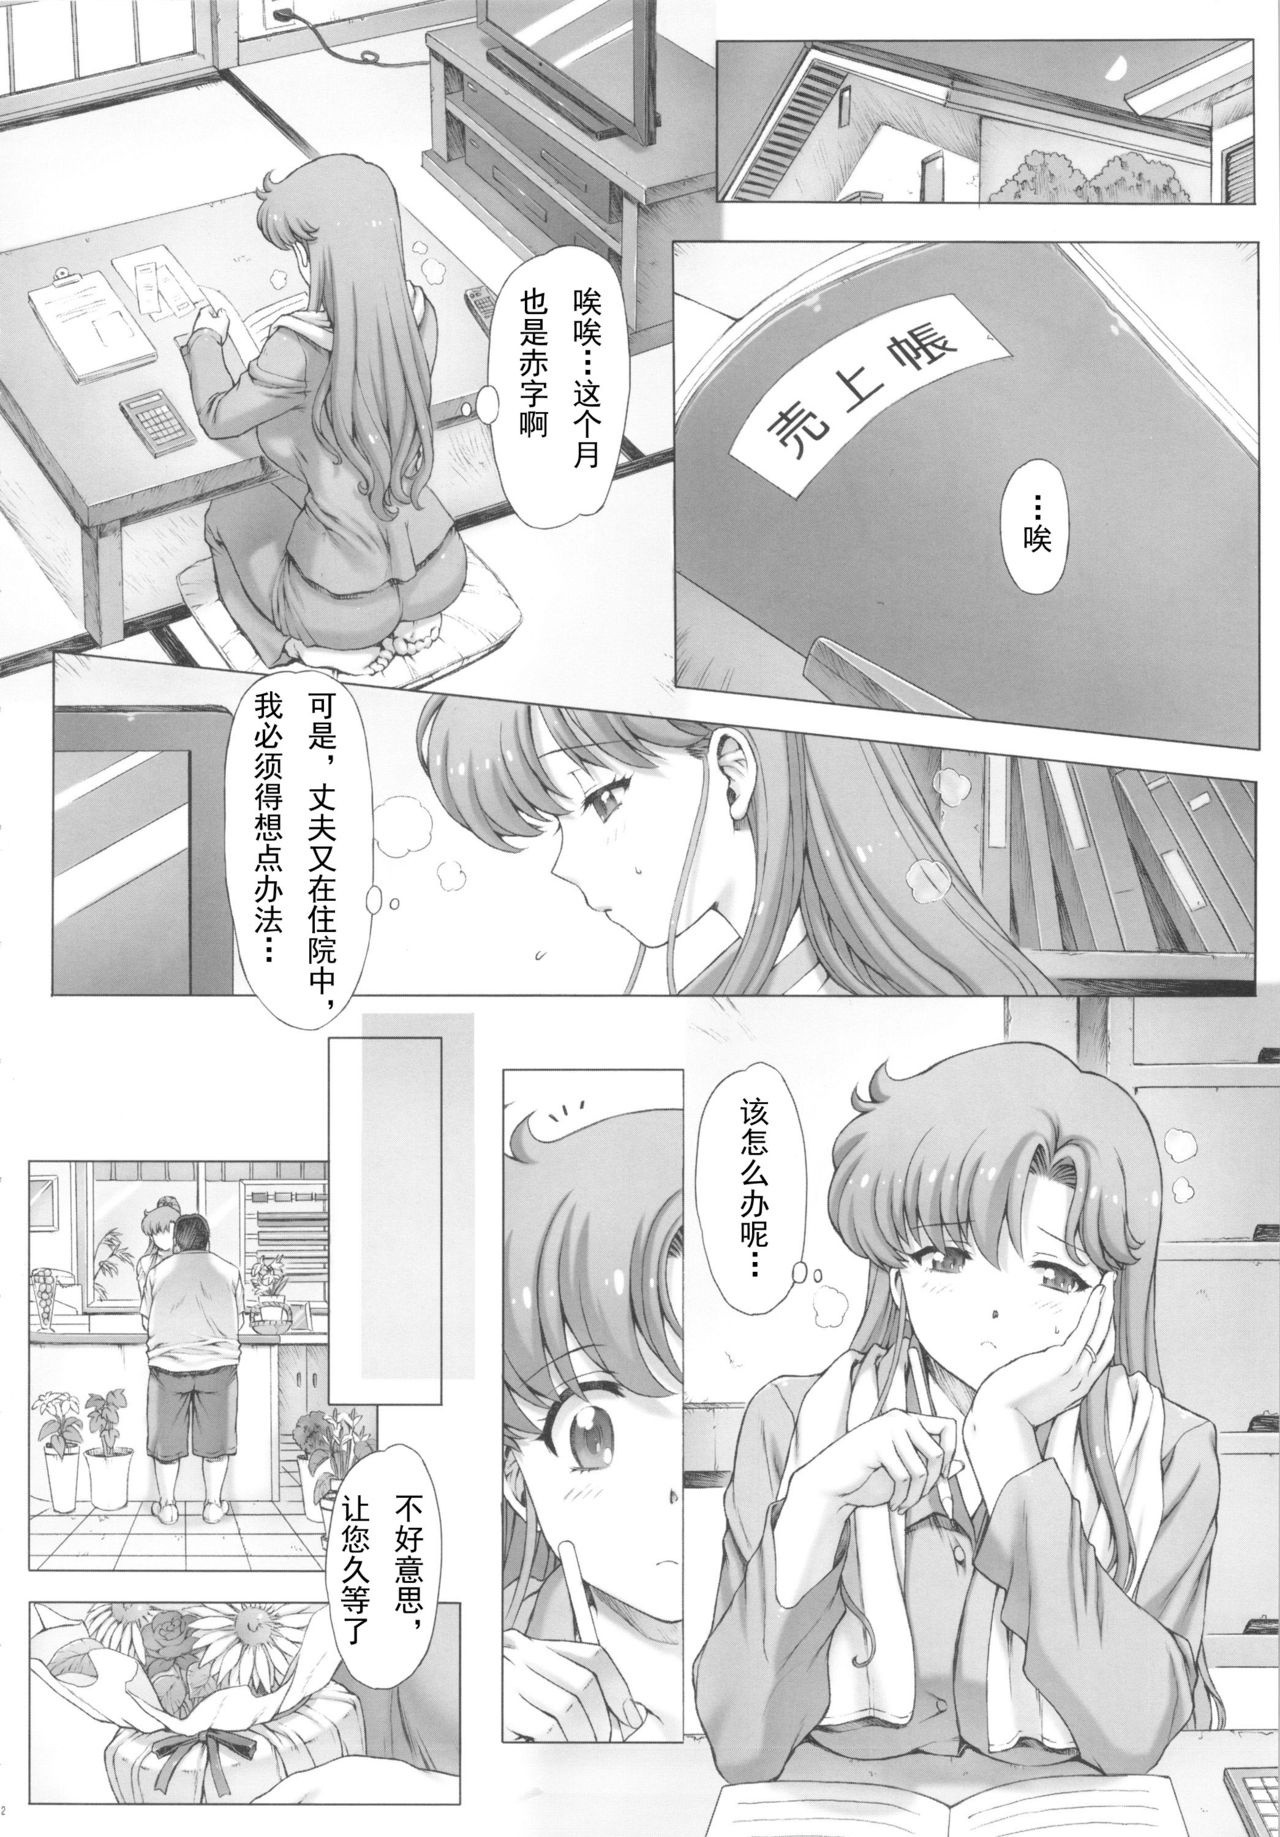 Inka + Omake Bon + Postcard hentai manga picture 3